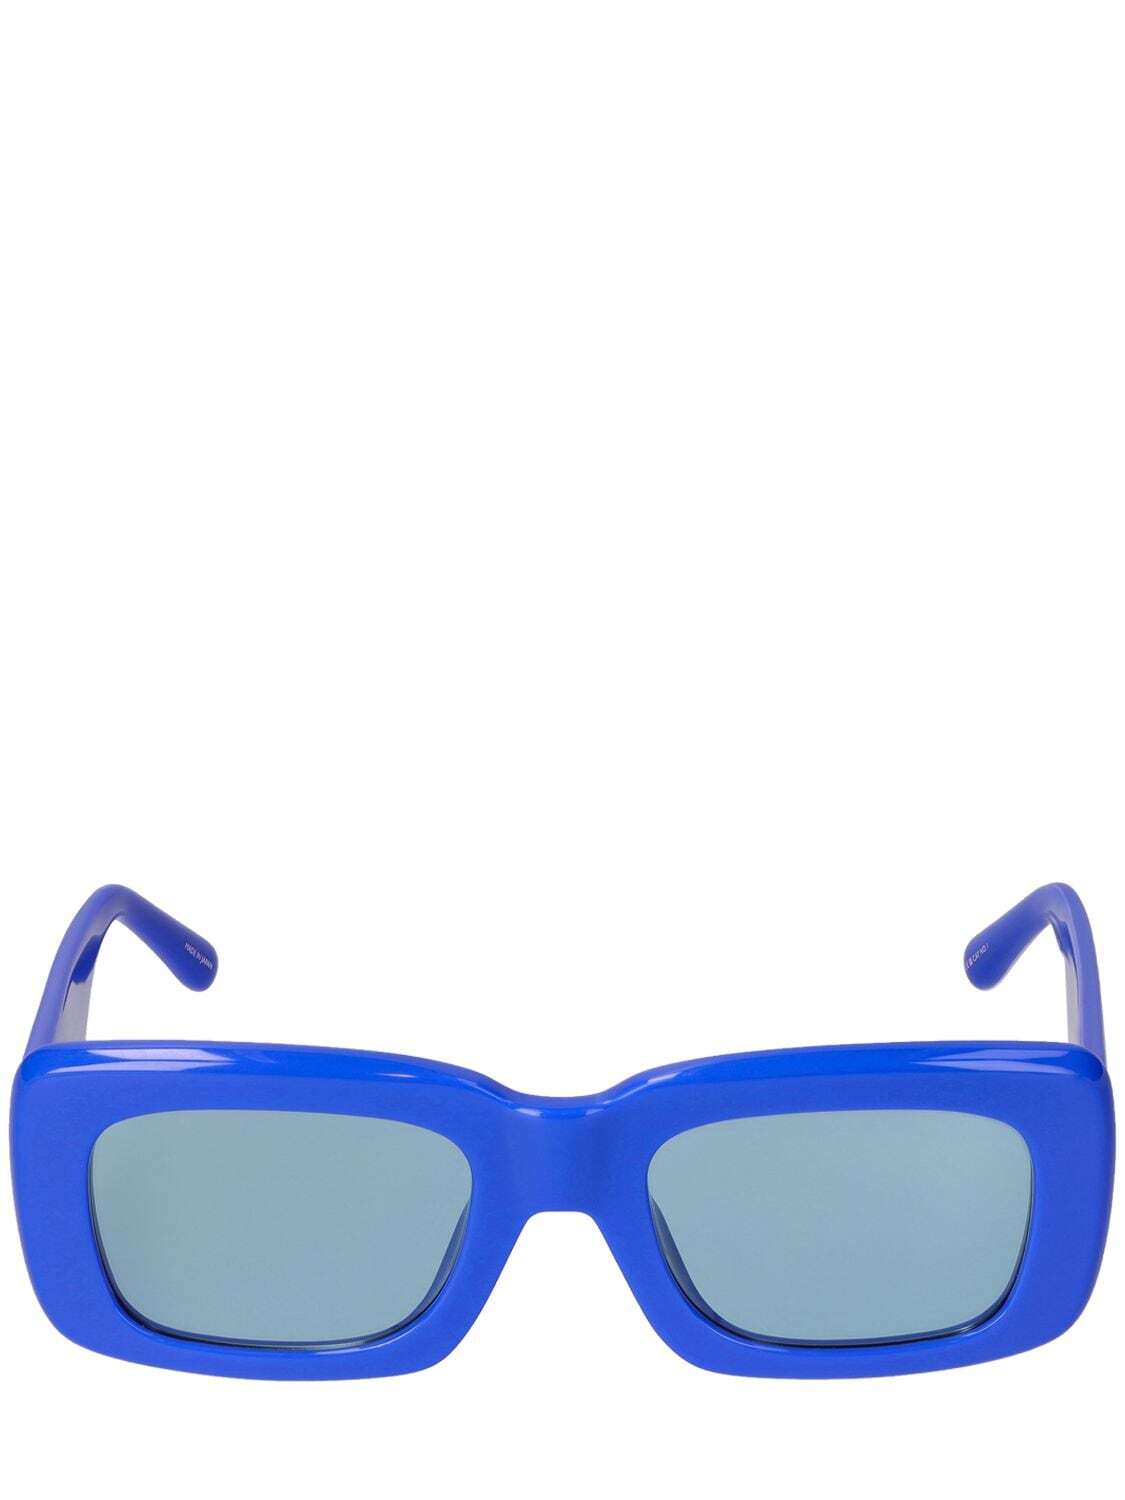 THE ATTICO Marfa Squared Acetate Sunglasses in blue